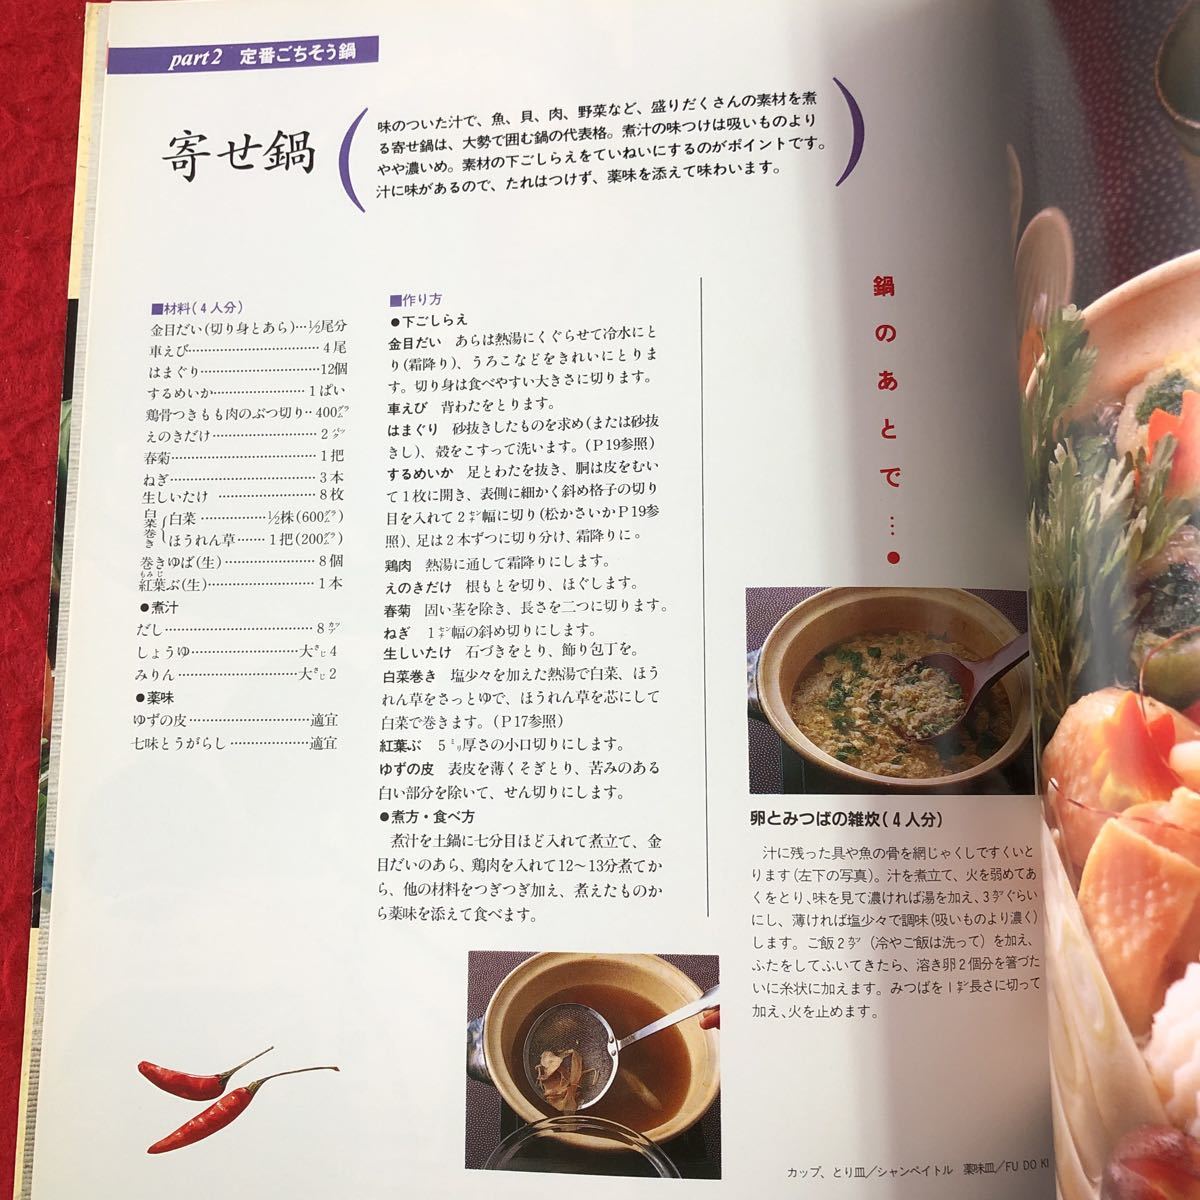 S6f-030 おすすめ 鍋もの 素材を生かした旬の味わい 婦人生活ファミリークッキングシリーズ 平成5年12月1日 発行 婦人生活社 料理 レシピ_画像7